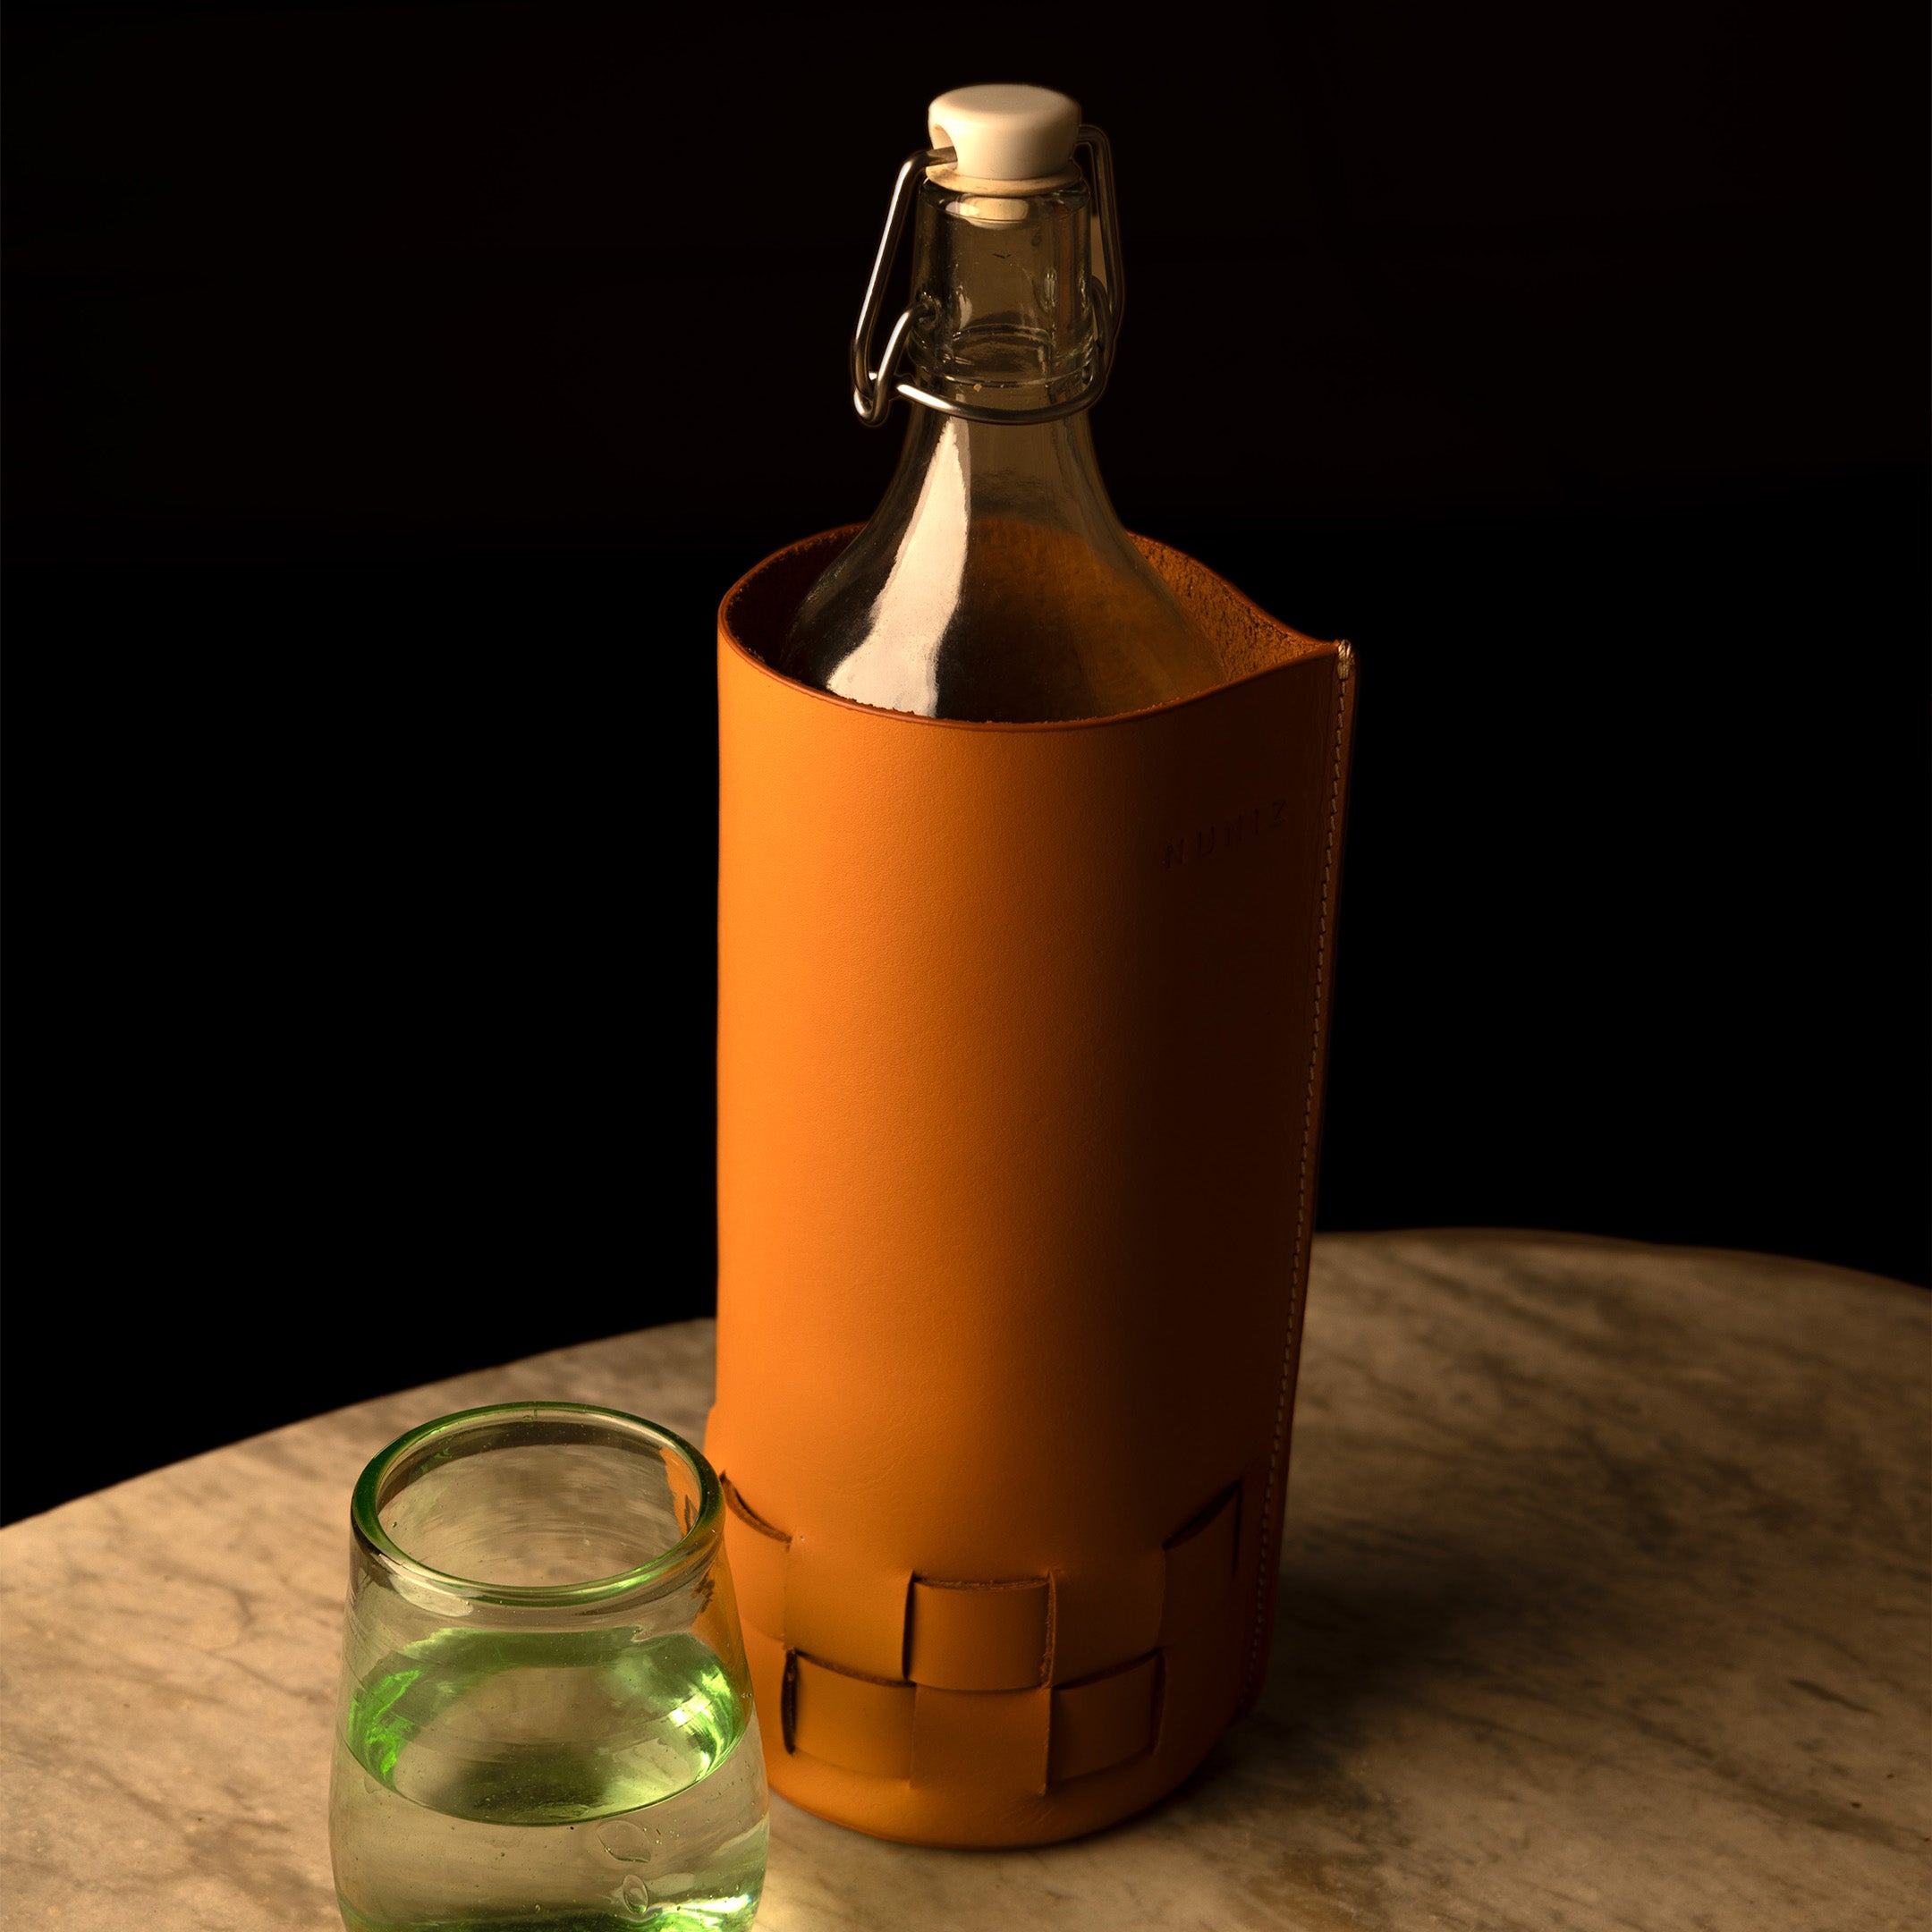 Woven bottle holder